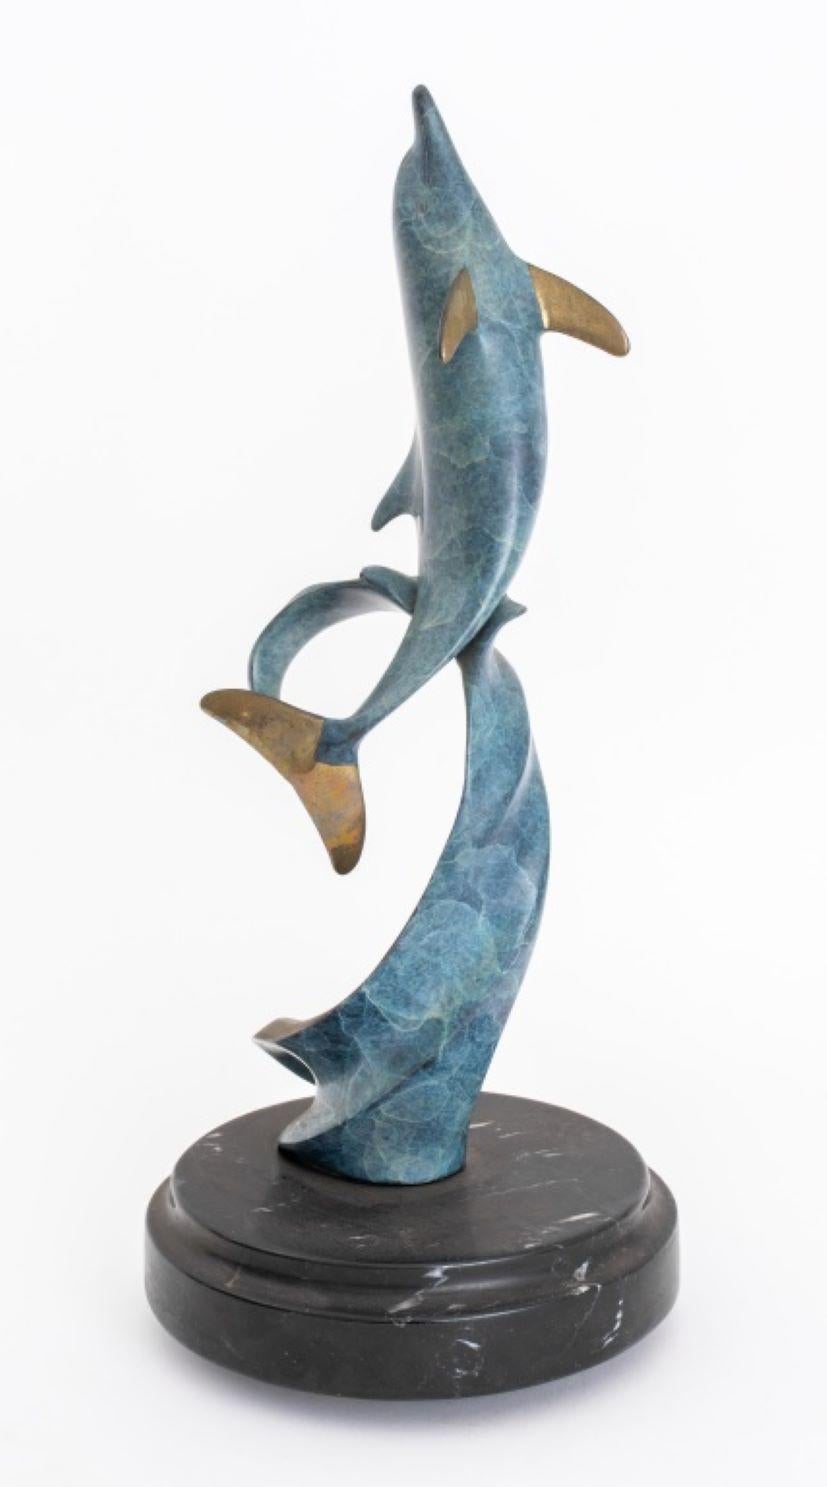 Scott Hanson (américain, XX-XXI), Sculpture en bronze représentant un dauphin, édition signée et numérotée 